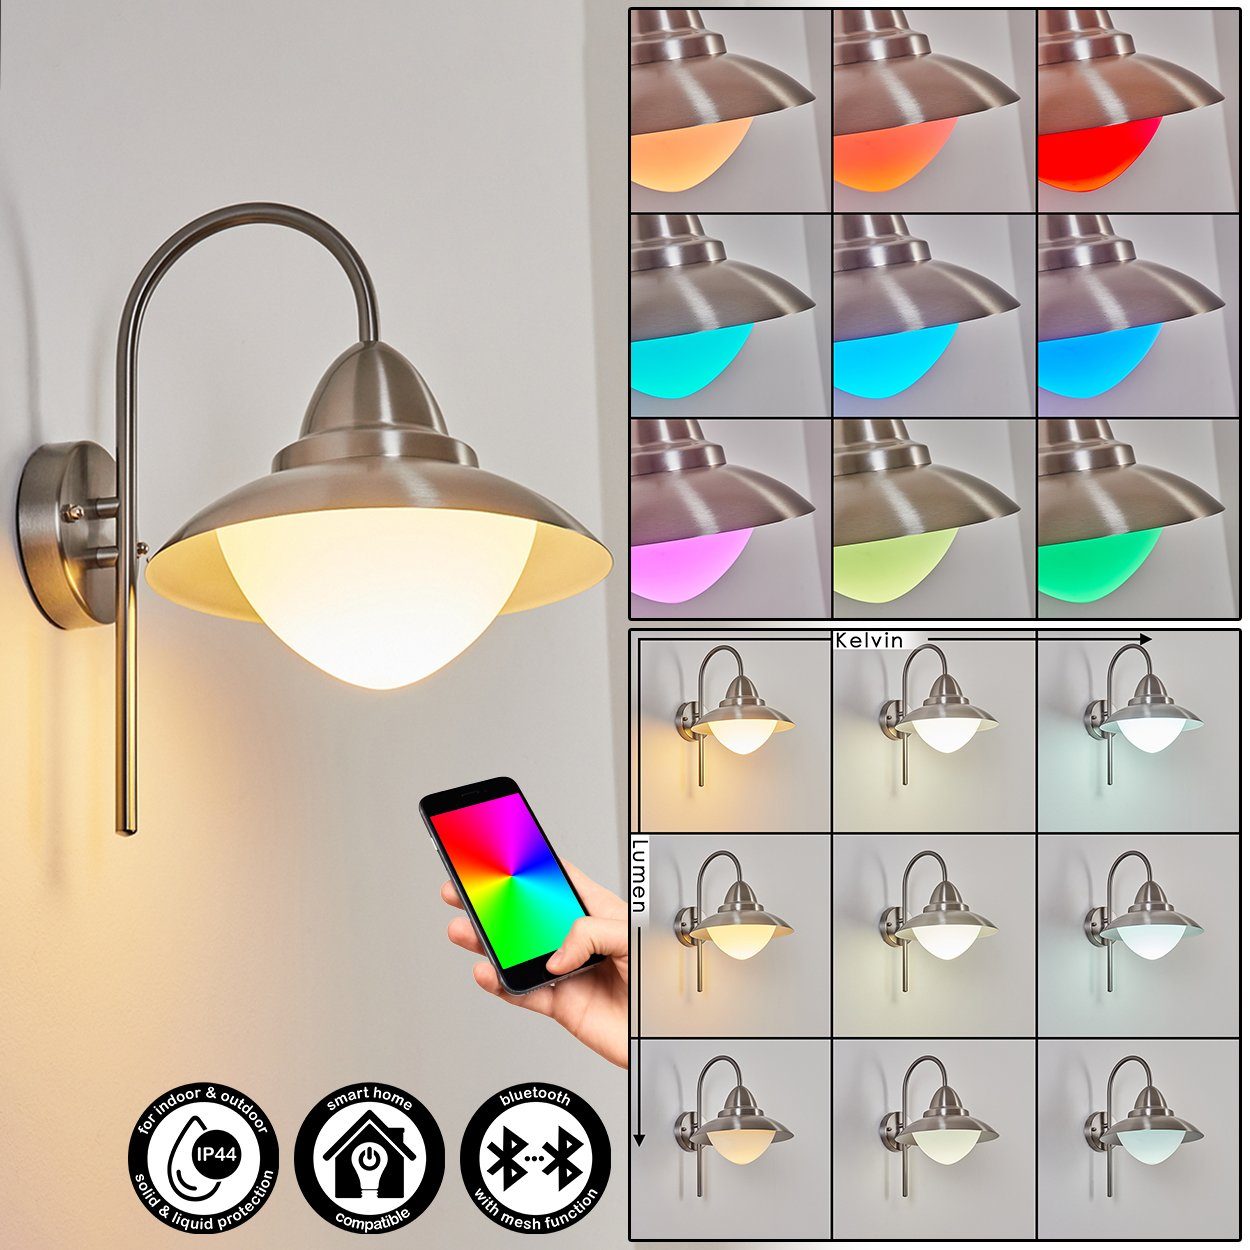 hofstein Außen-Wandleuchte dimmbare Wandleuchte aus Metall/Glas in Nickel-matt/Weiß, LED fest integriert, m. RGB-Farbwechsel, steuerbar m. Fernbedienung, Smart App, IP54